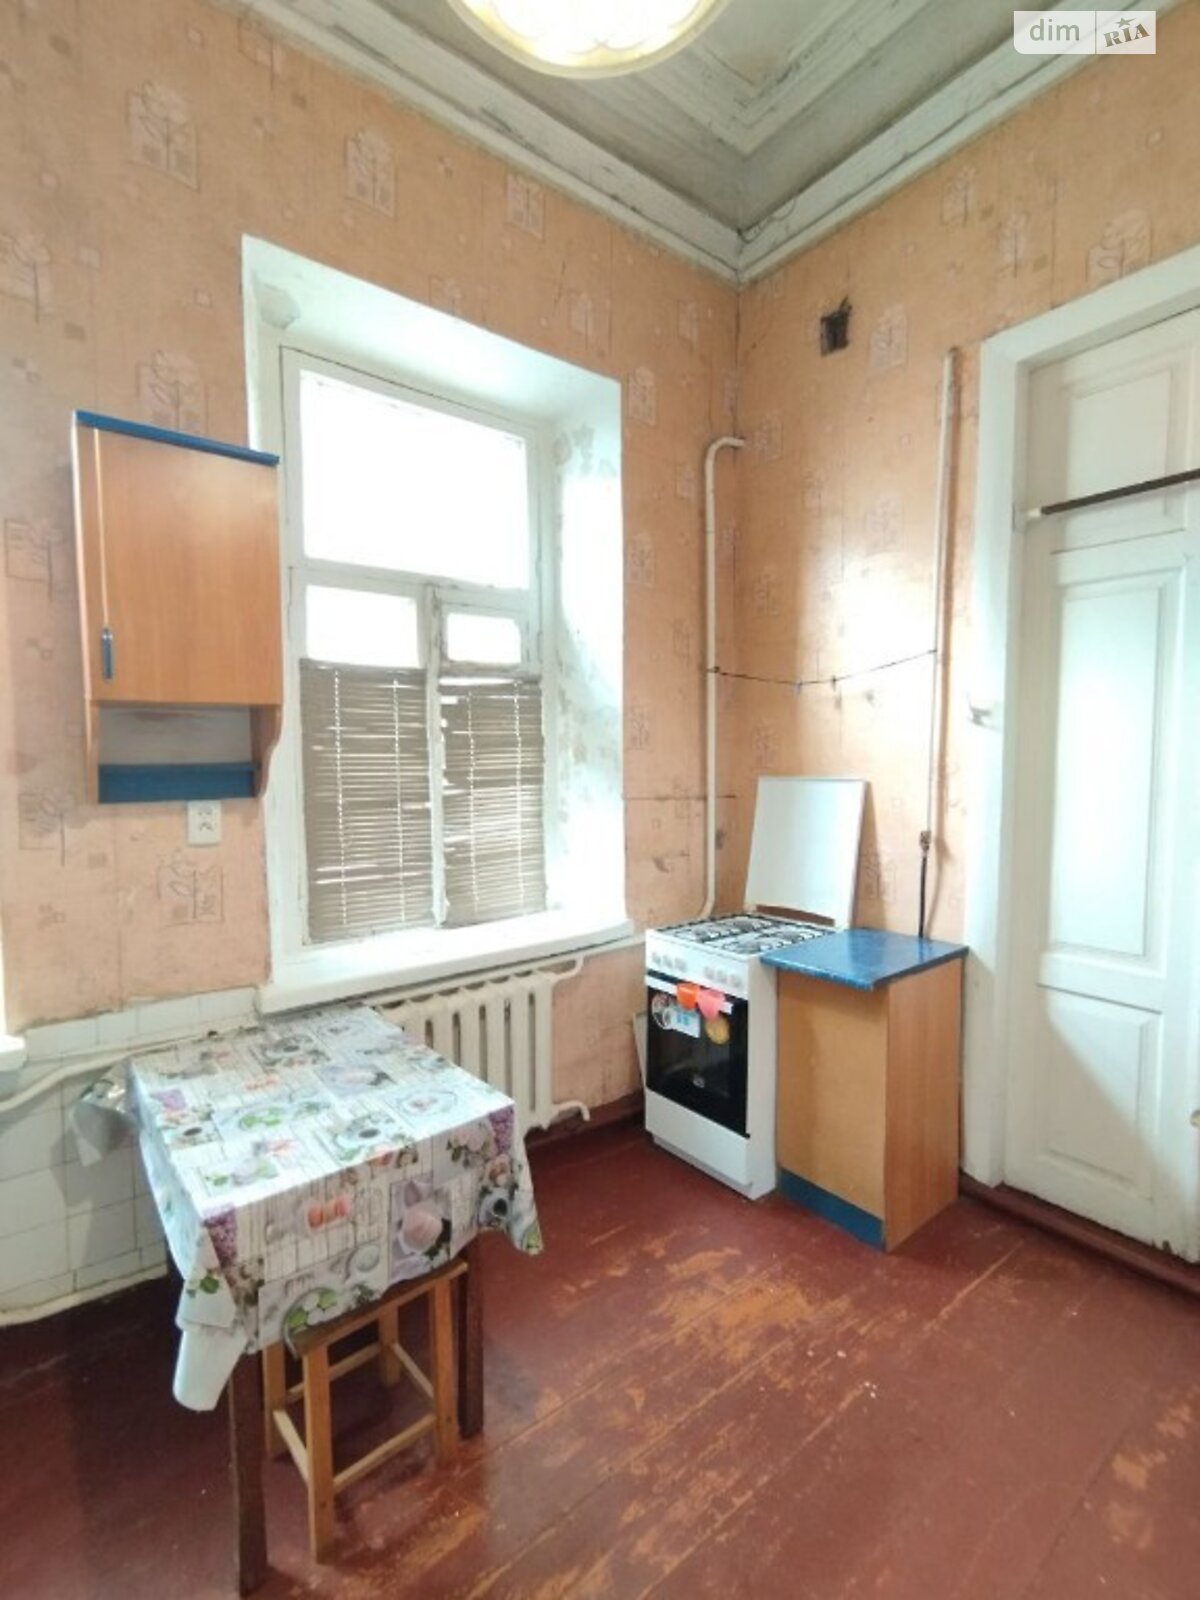 Продажа части дома в Днепре, район Чечеловка, 1 комната фото 1